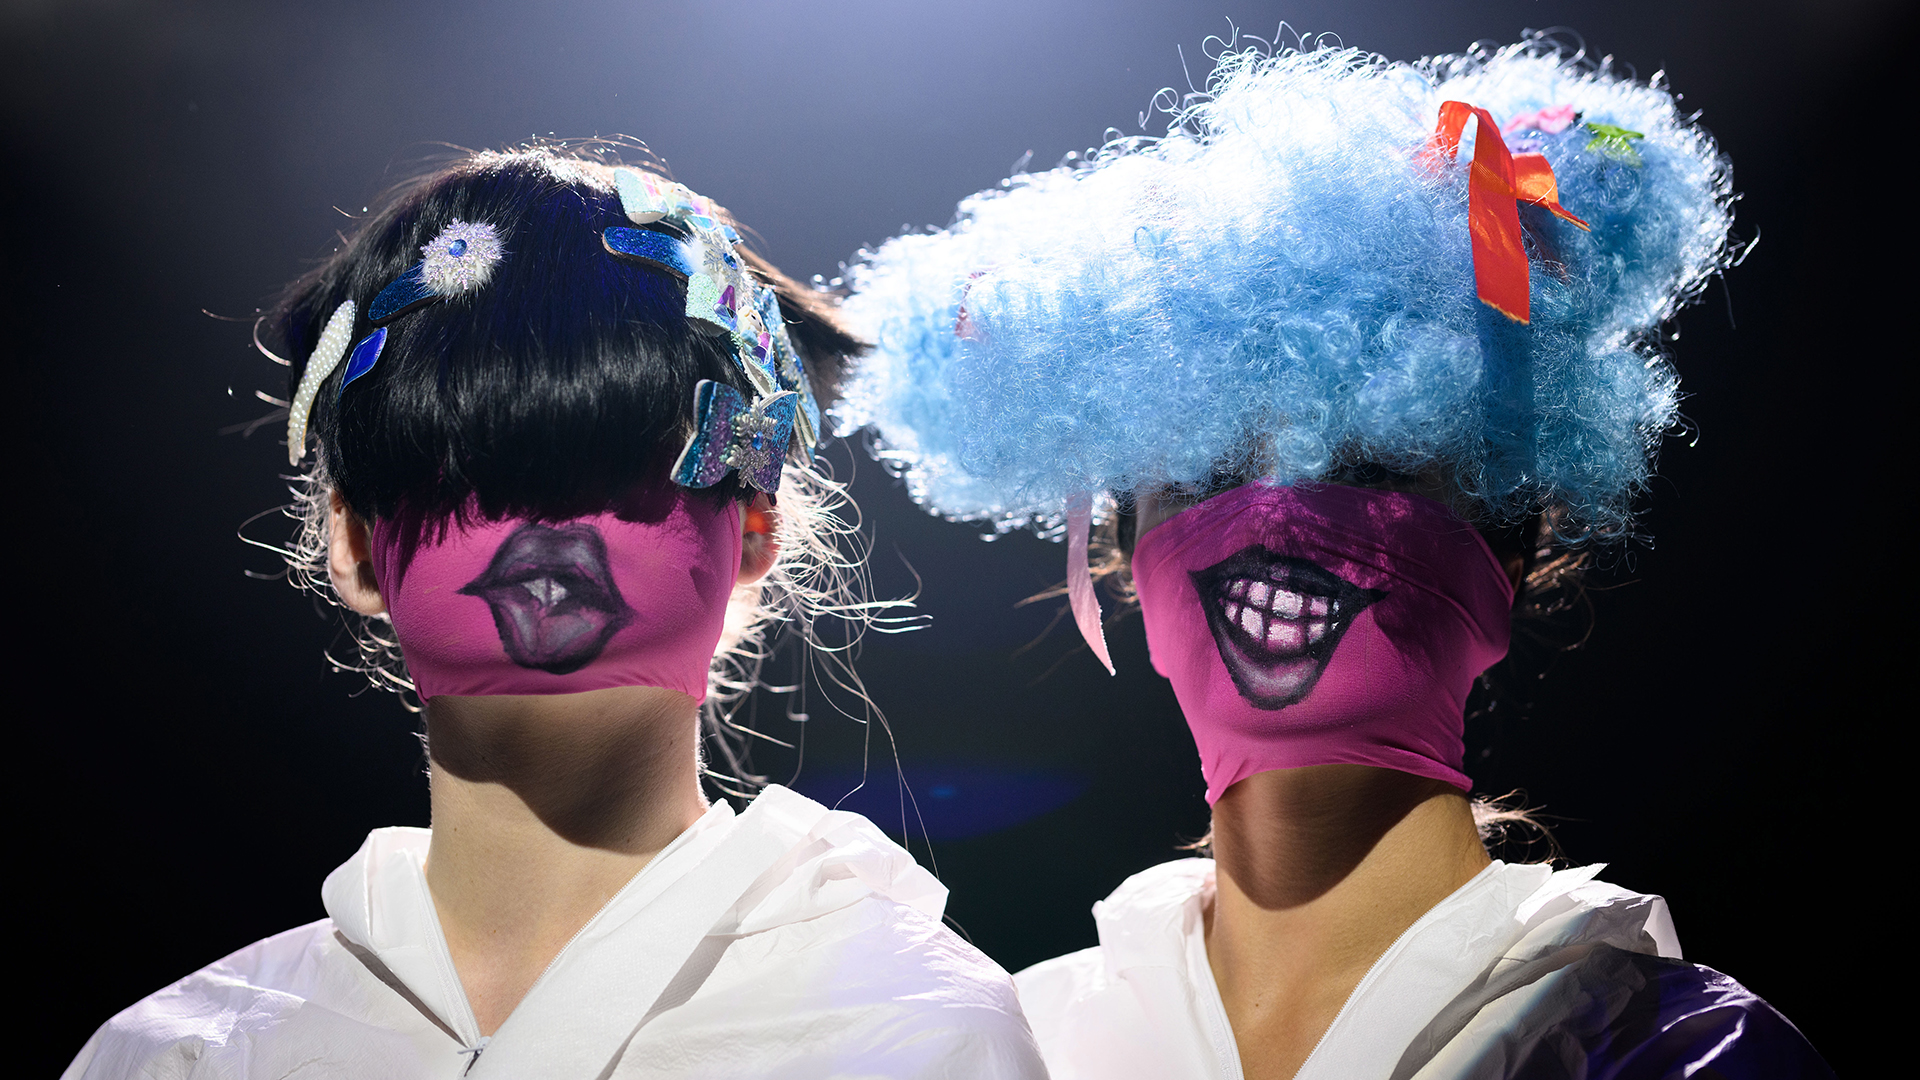 Teilnehmerinnen mit bunten Masken nehmen an der Injury Show auf der Australian Fashion Week 2022 in Sydney (Australien) teil. | EPA